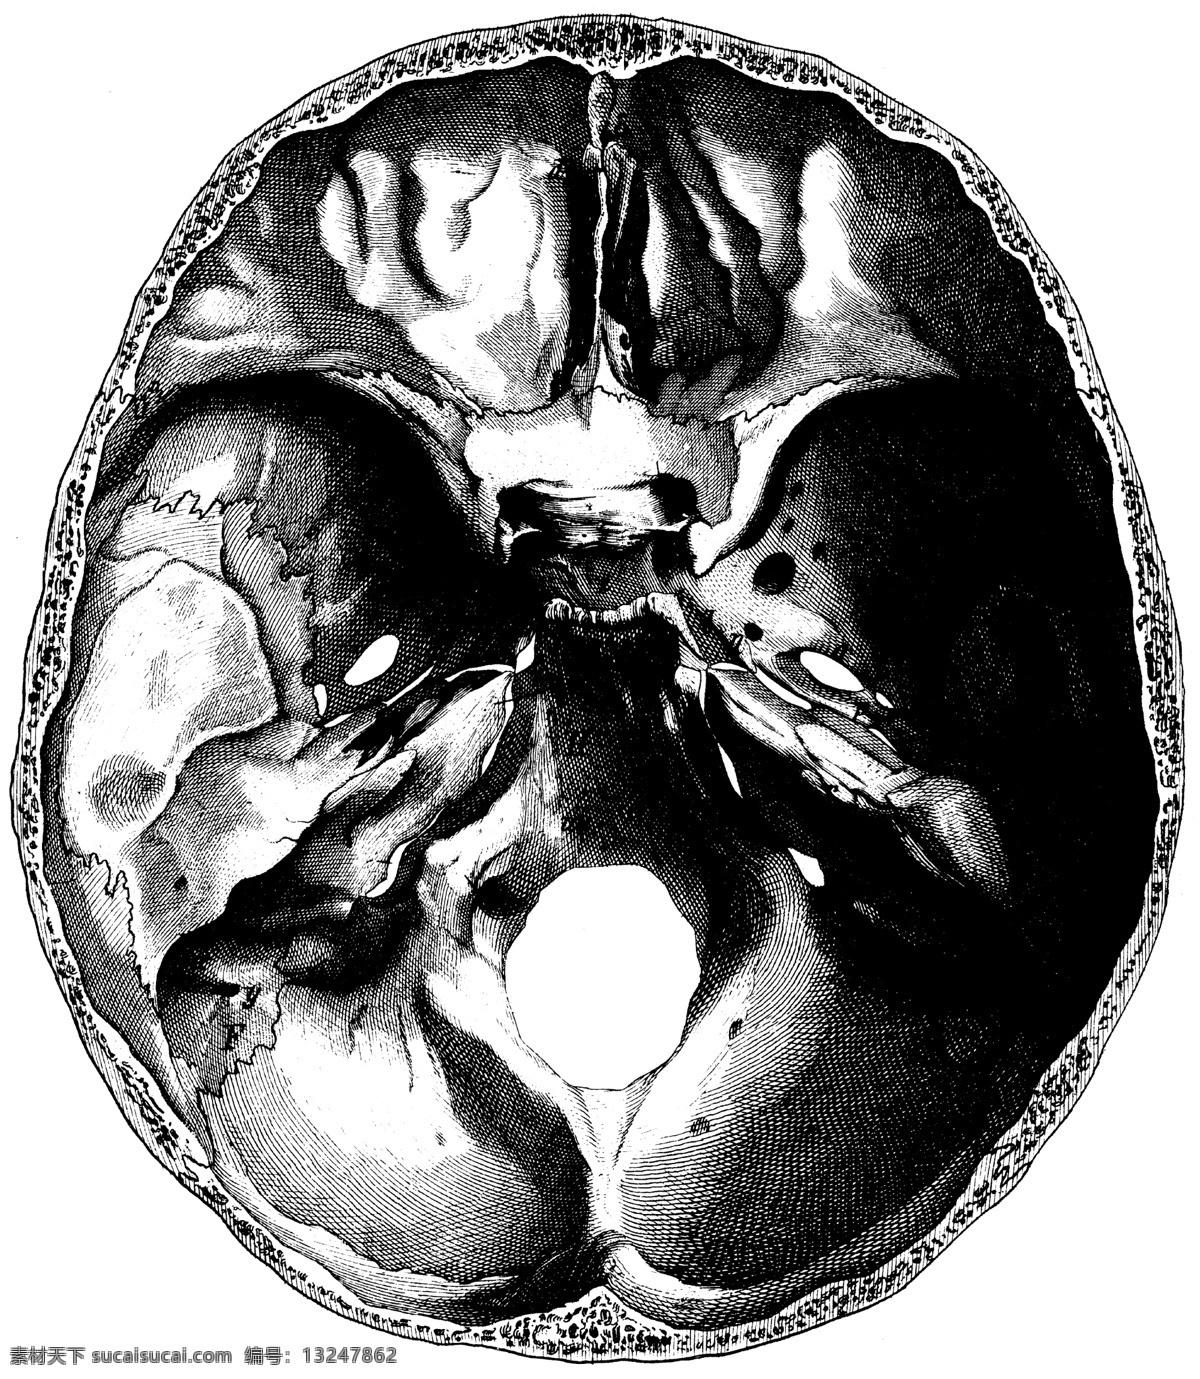 人体 头盖骨 切片 内部 ct 侧面 头骨 医学 解剖 法医 骷髅 核磁共振 人体解剖 医疗护理 现代科技